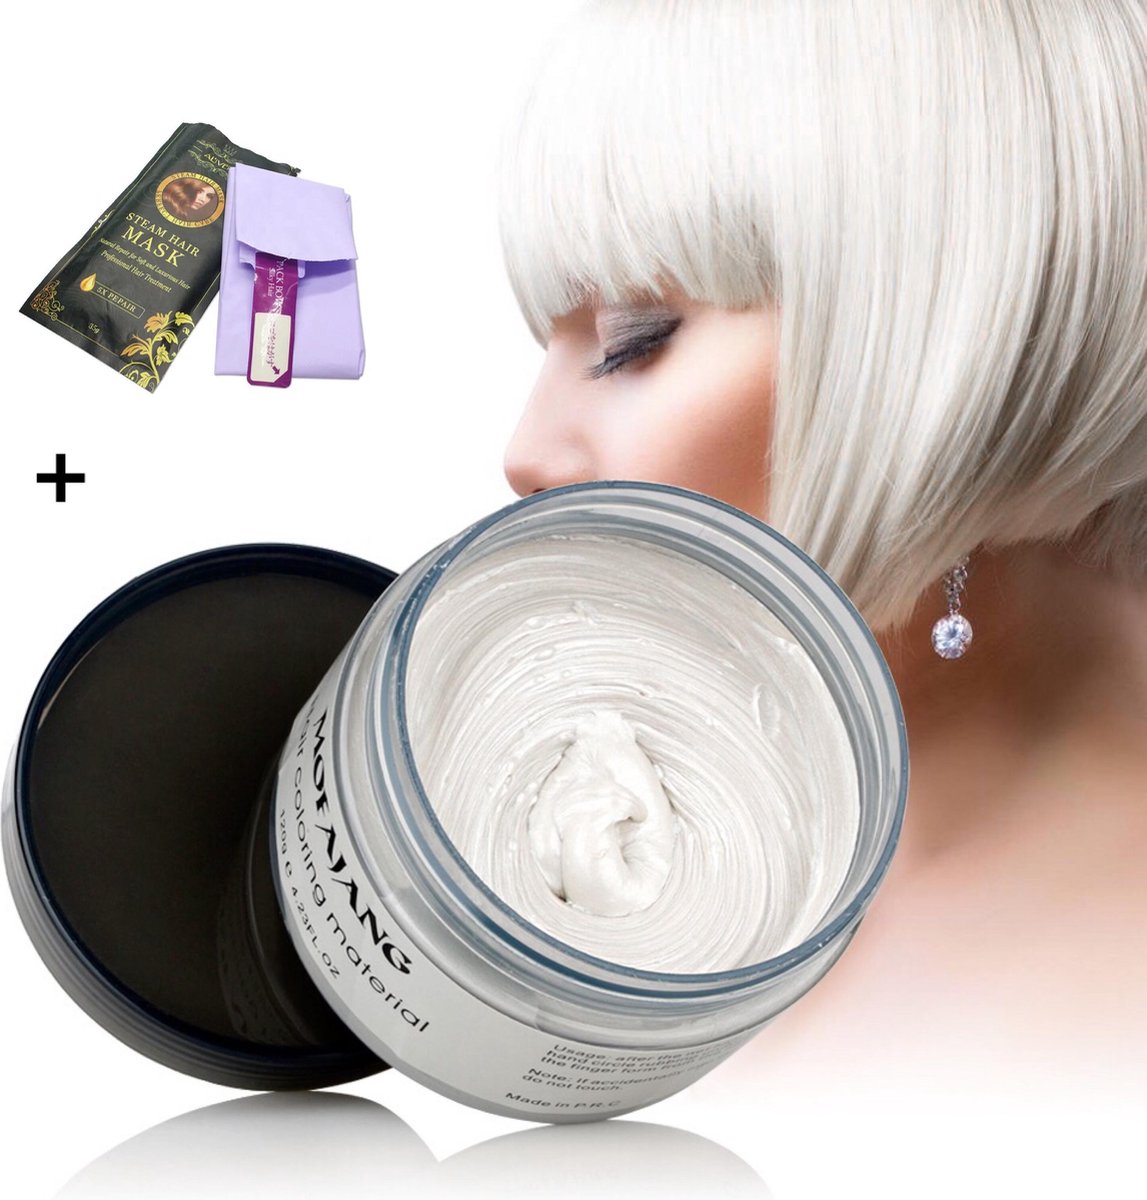 Mofajang Japanse Haarkleur wax|Wit|Inclusief haarmasker met haarcap|Haarverf|Tijdelijk haarkleur verandering|Carnaval/Cosplay natuurlijk haarcrème|